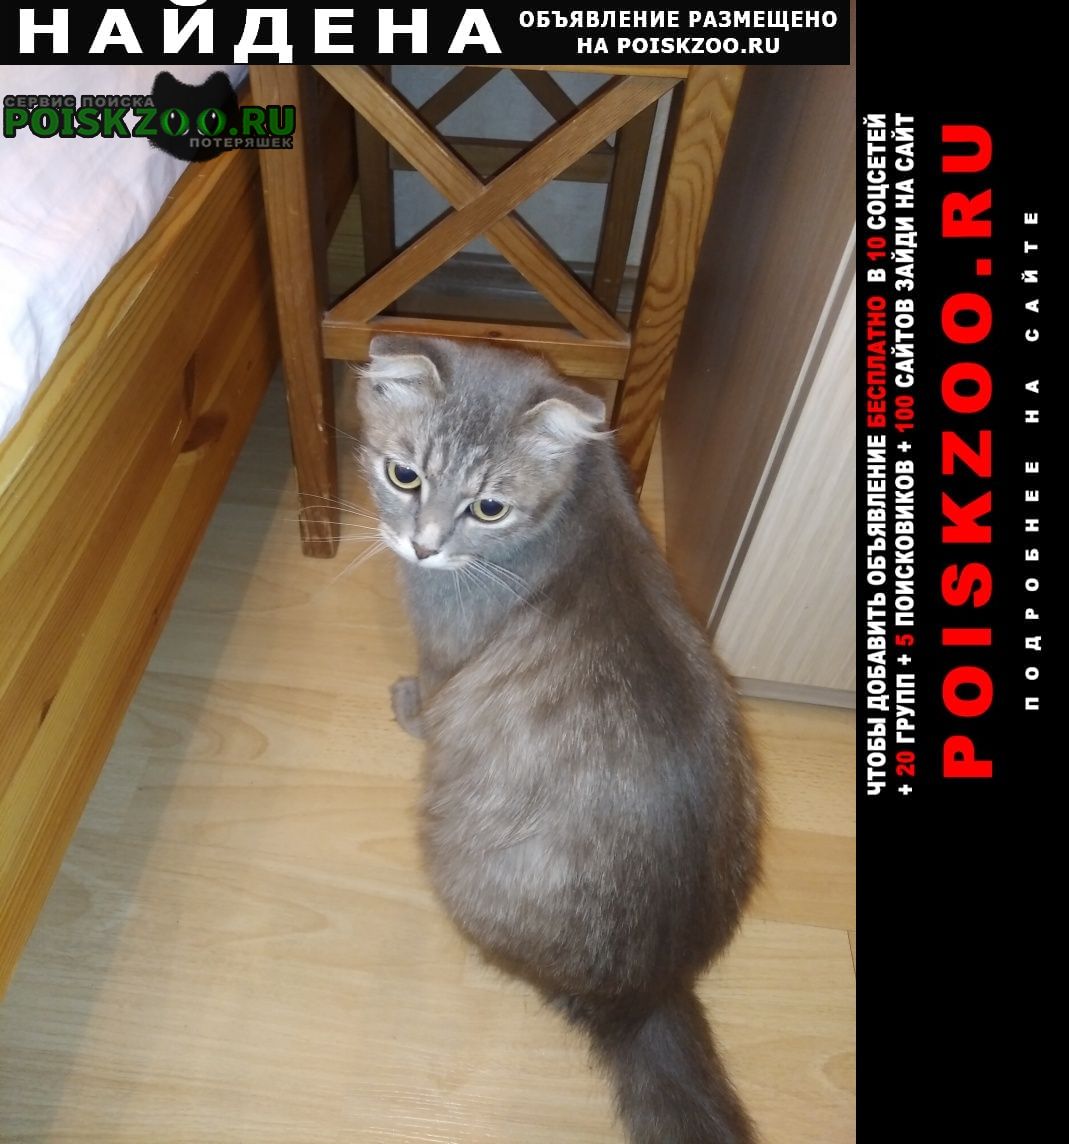 Найдена кошка скоттиш фолд на азовской улице Москва